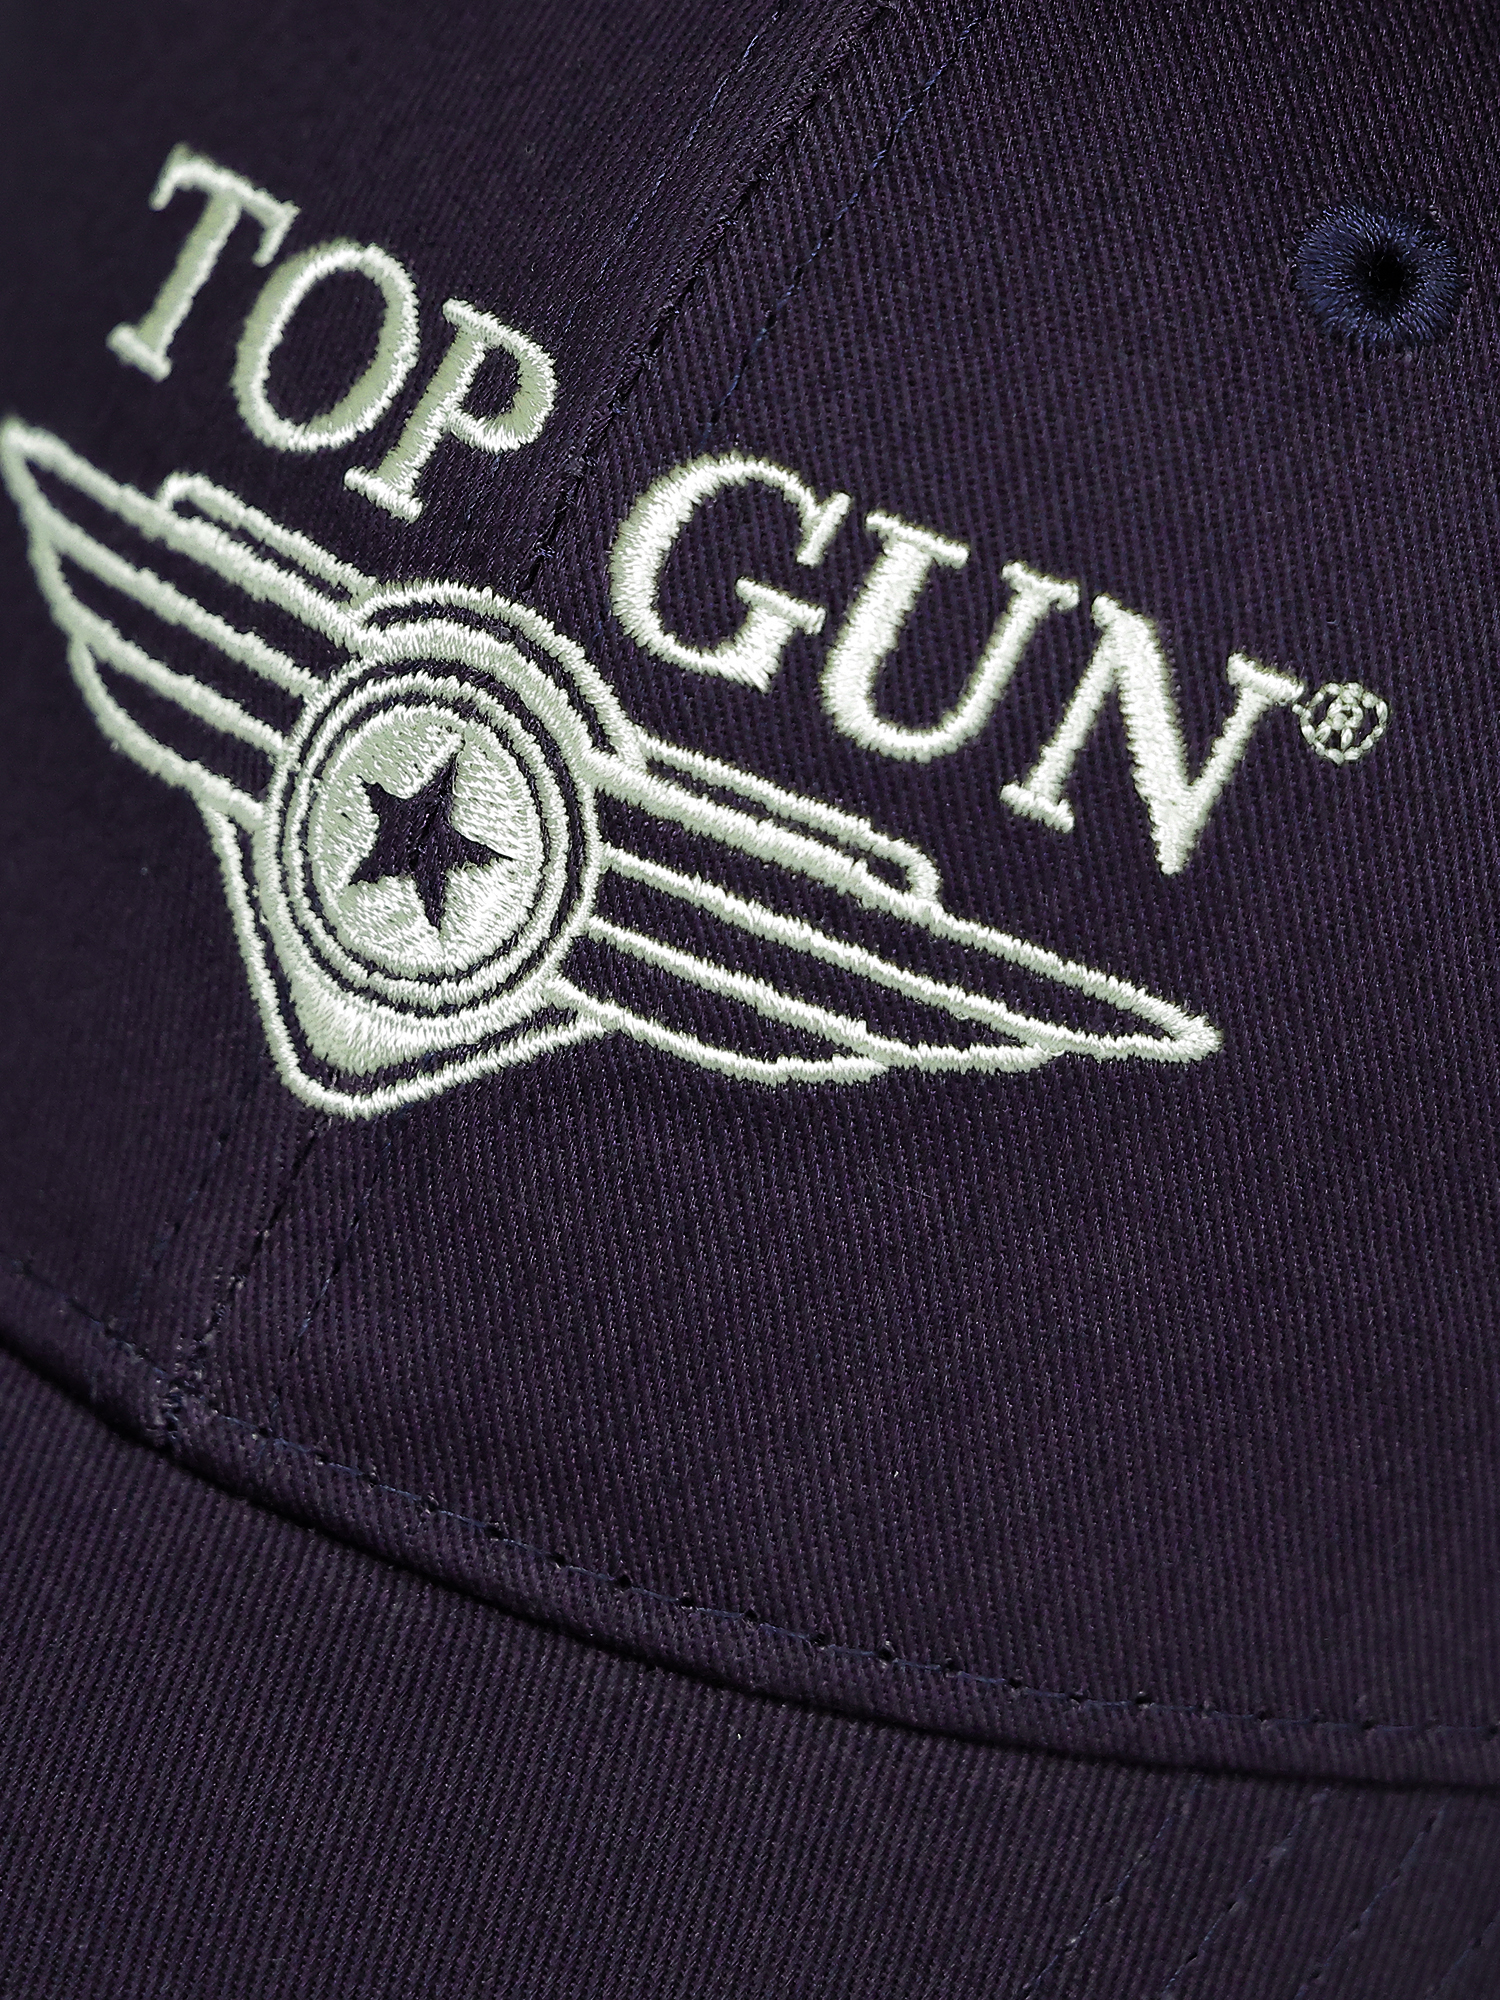 Snapback Cap | Top Gun® Shop Deutschland